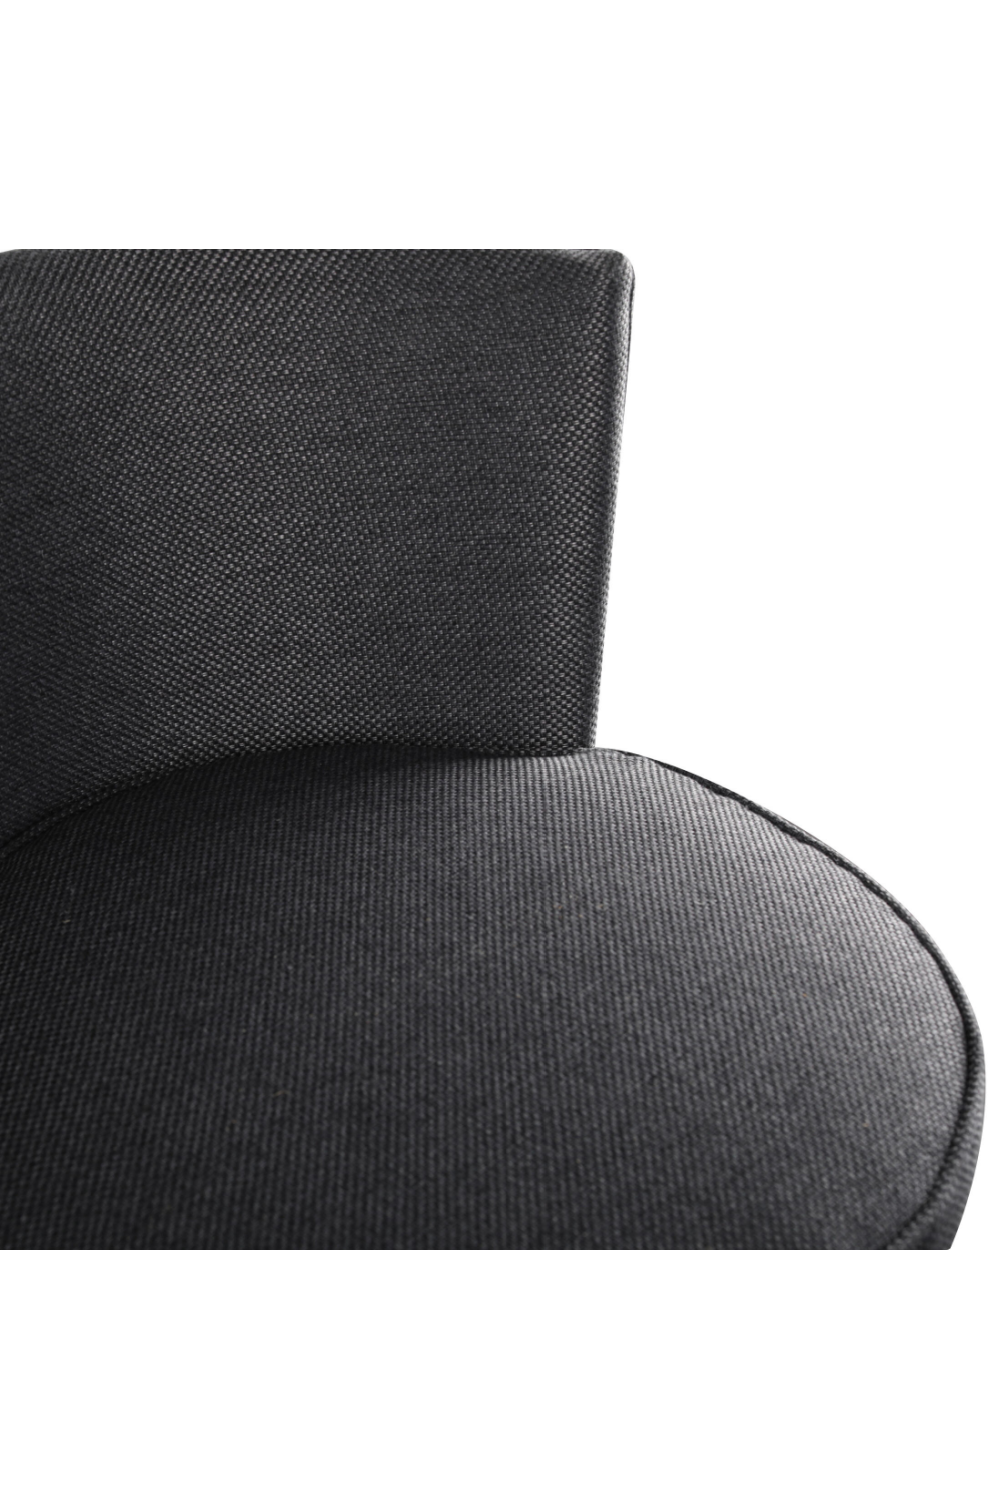 Gray Upholstered Swivel Bar Stool | Andrew Martin Povis | Oroa.com